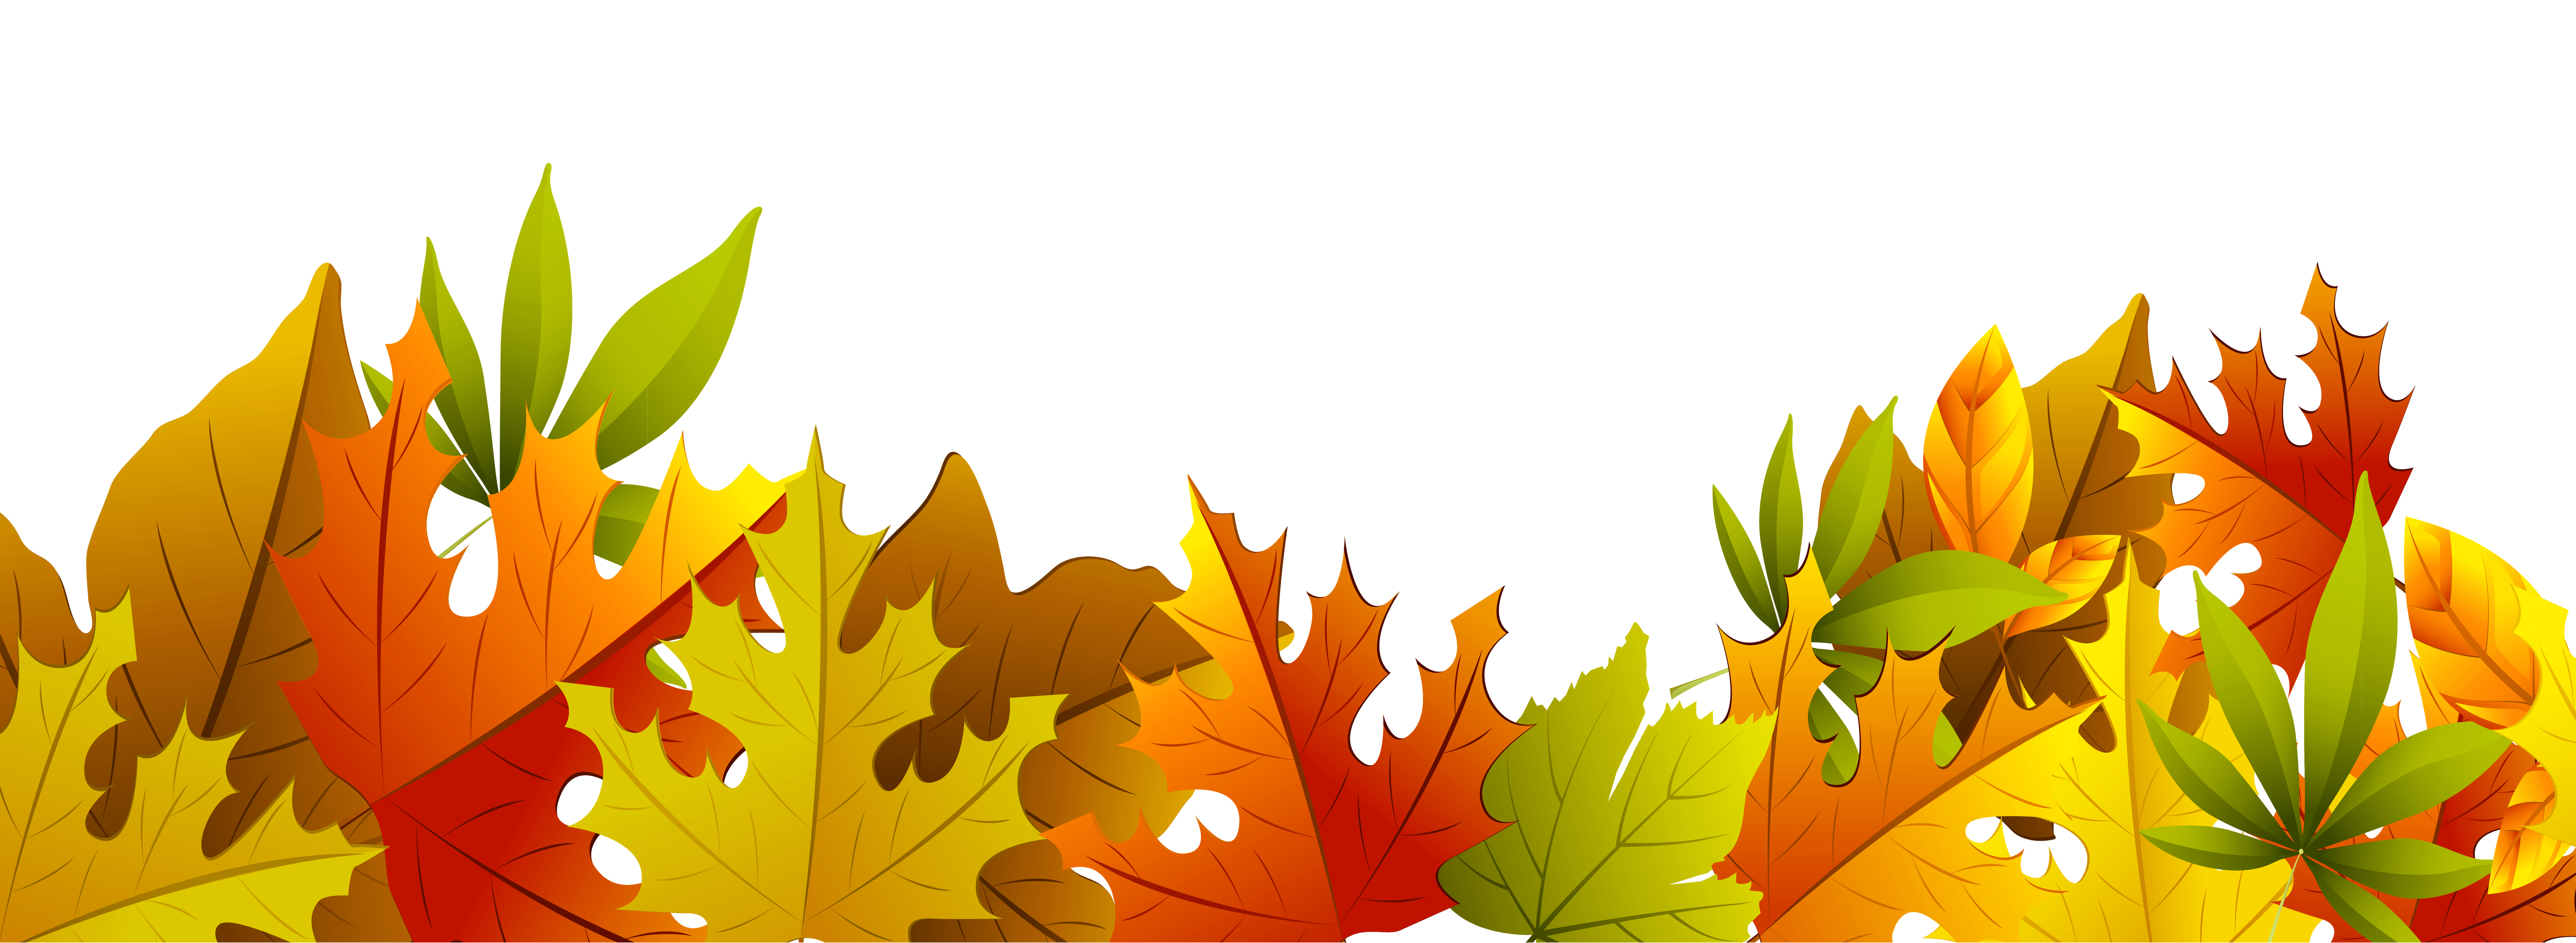 Decorative Autumn Leaves Transparent Image Clipart